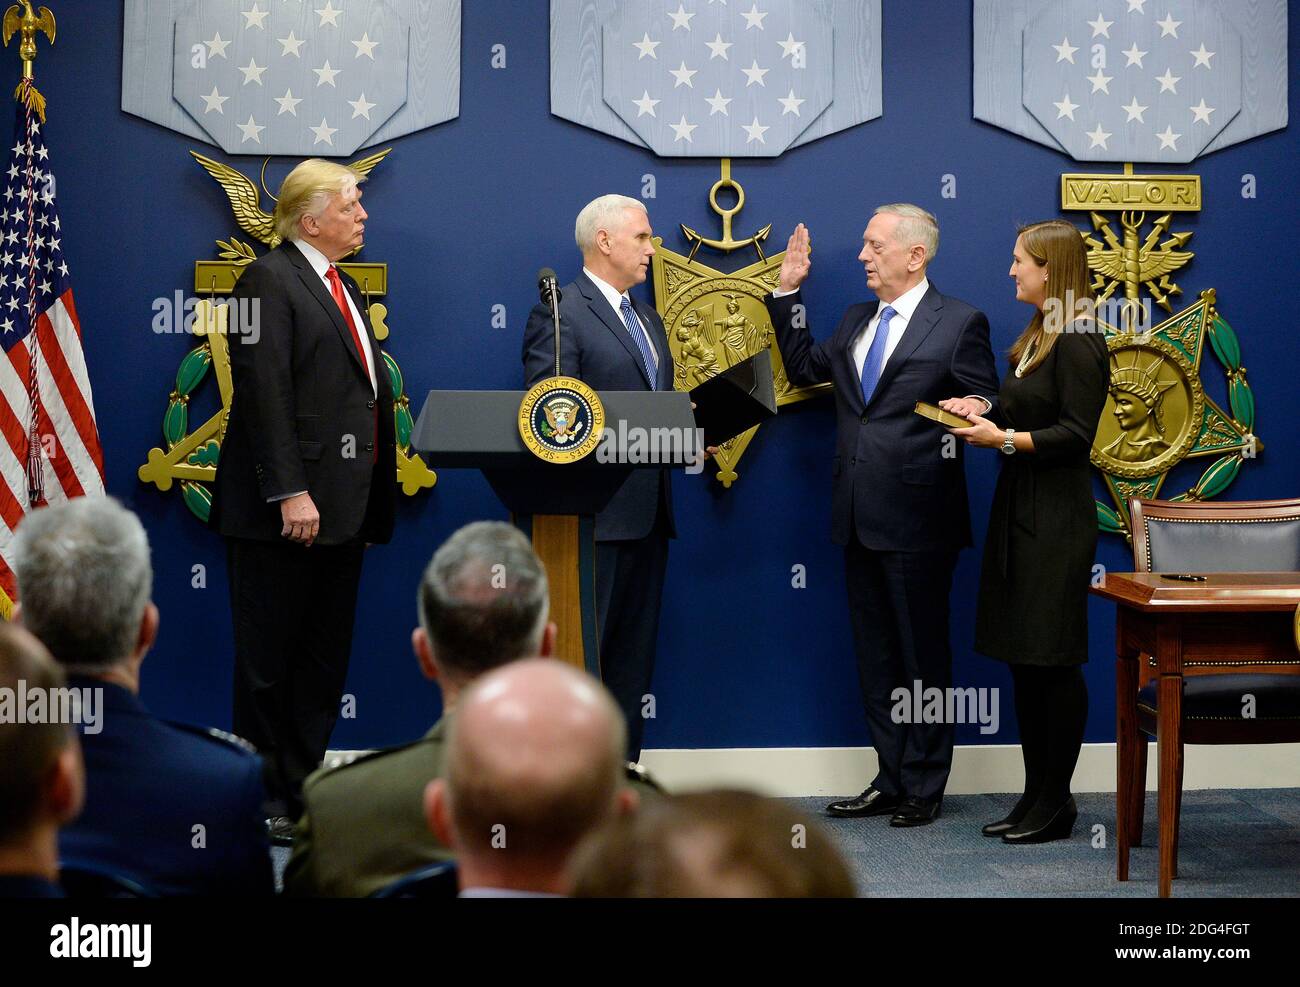 El Vicepresidente DE EE.UU. Mike Pence jura en el General James Mattis como Secretario de Defensa de EE.UU. En el Salón de los Héroes del Departamento de Defensa de Virginia, 27 de enero de 2017. Foto de Olivier Douliery/Abaca Foto de stock